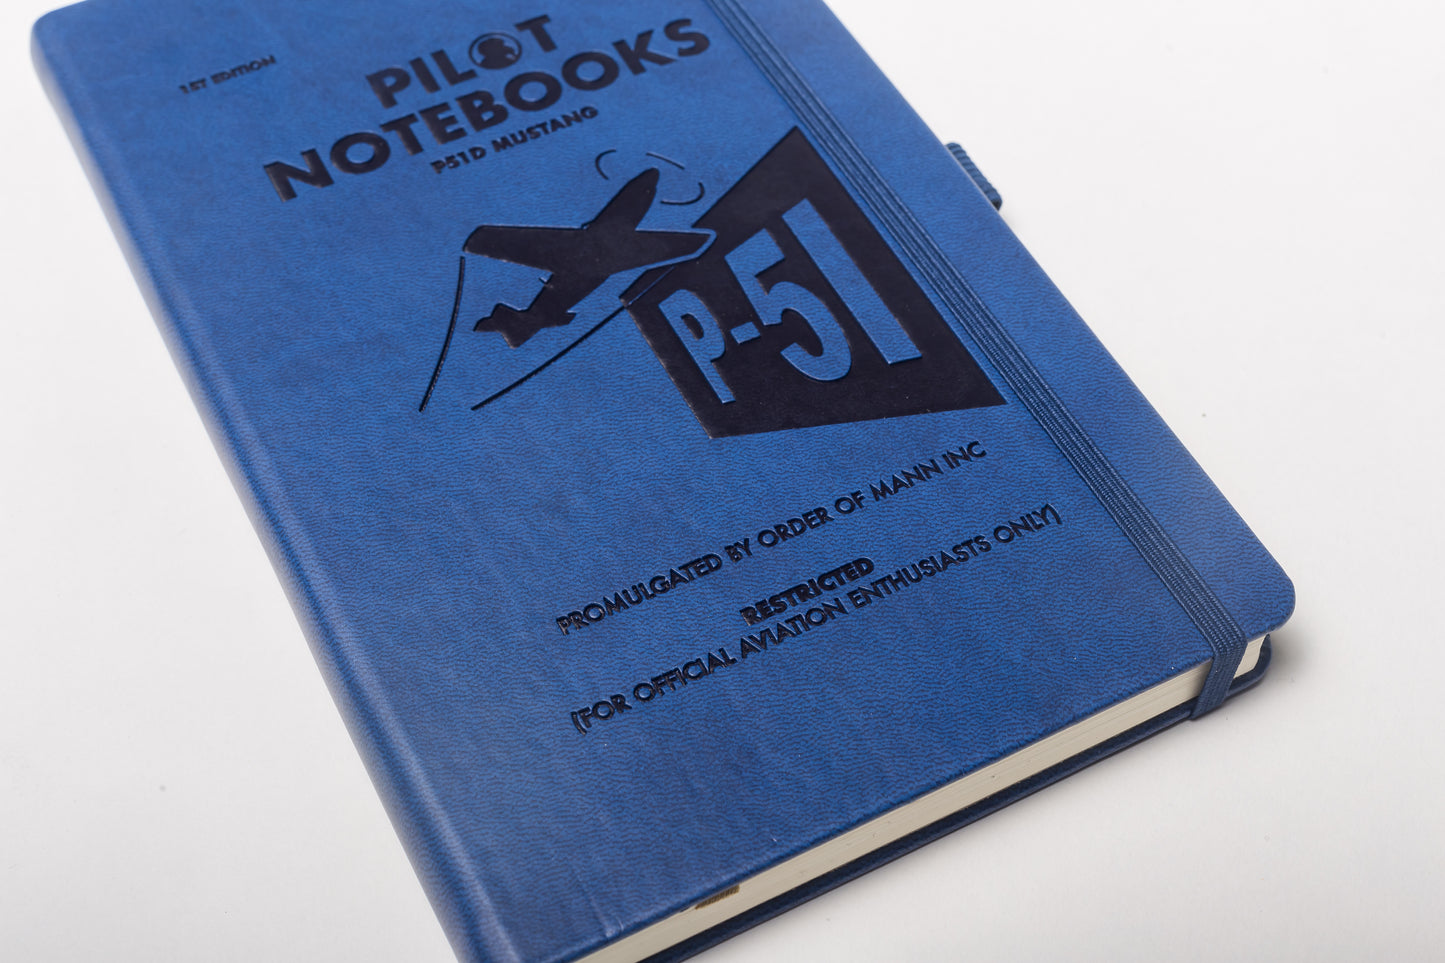 Pilot Notebooks - P-51 Mustang